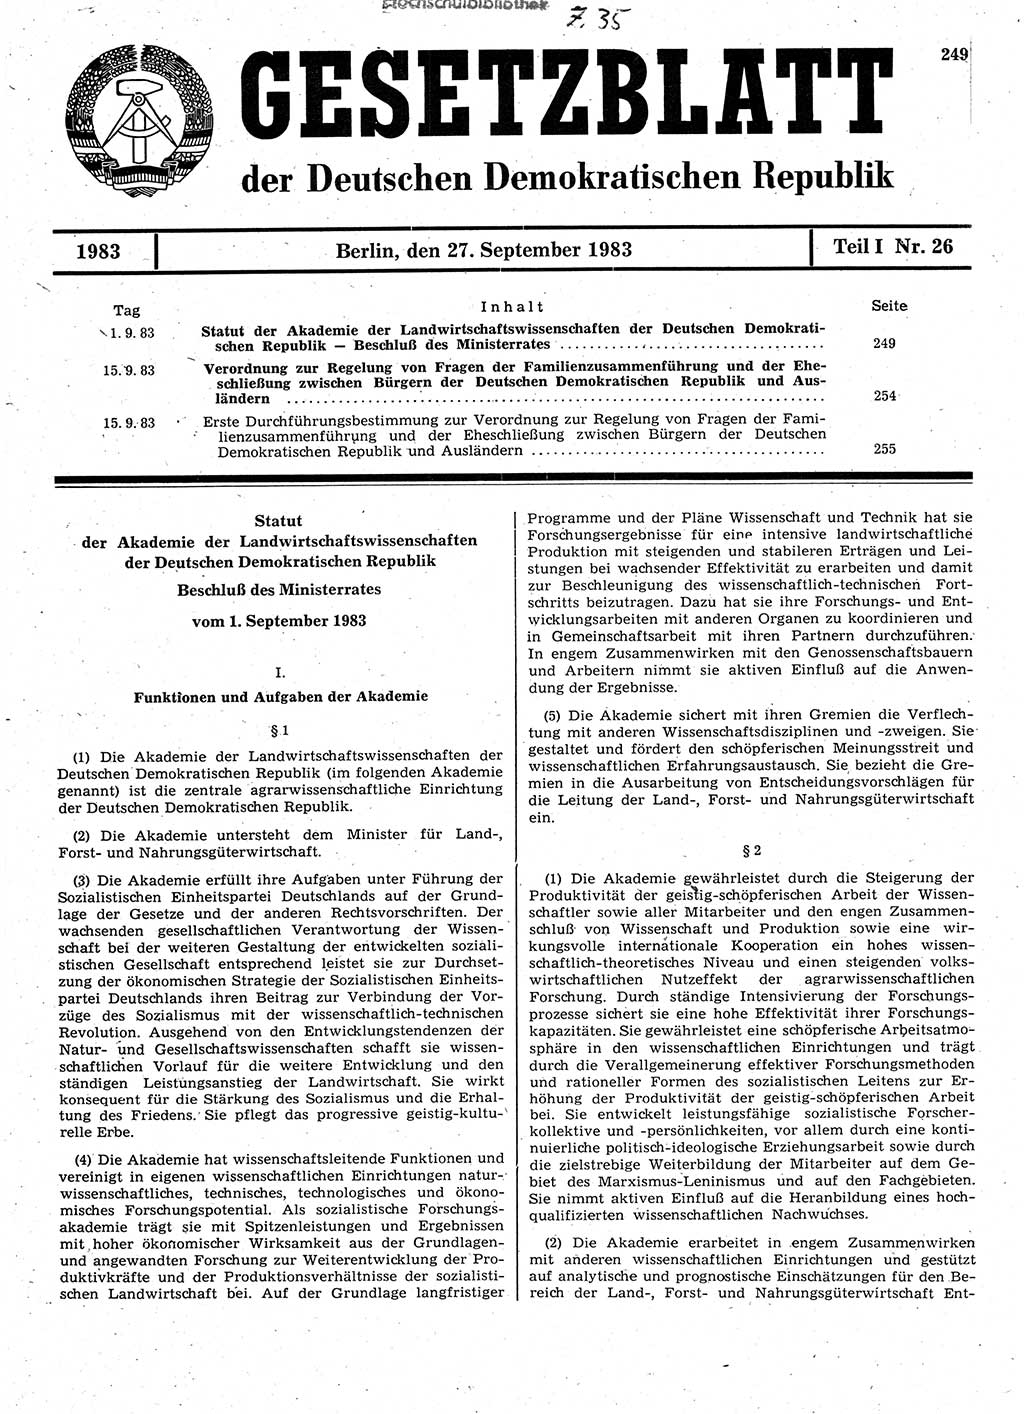 Gesetzblatt (GBl.) der Deutschen Demokratischen Republik (DDR) Teil Ⅰ 1983, Seite 249 (GBl. DDR Ⅰ 1983, S. 249)